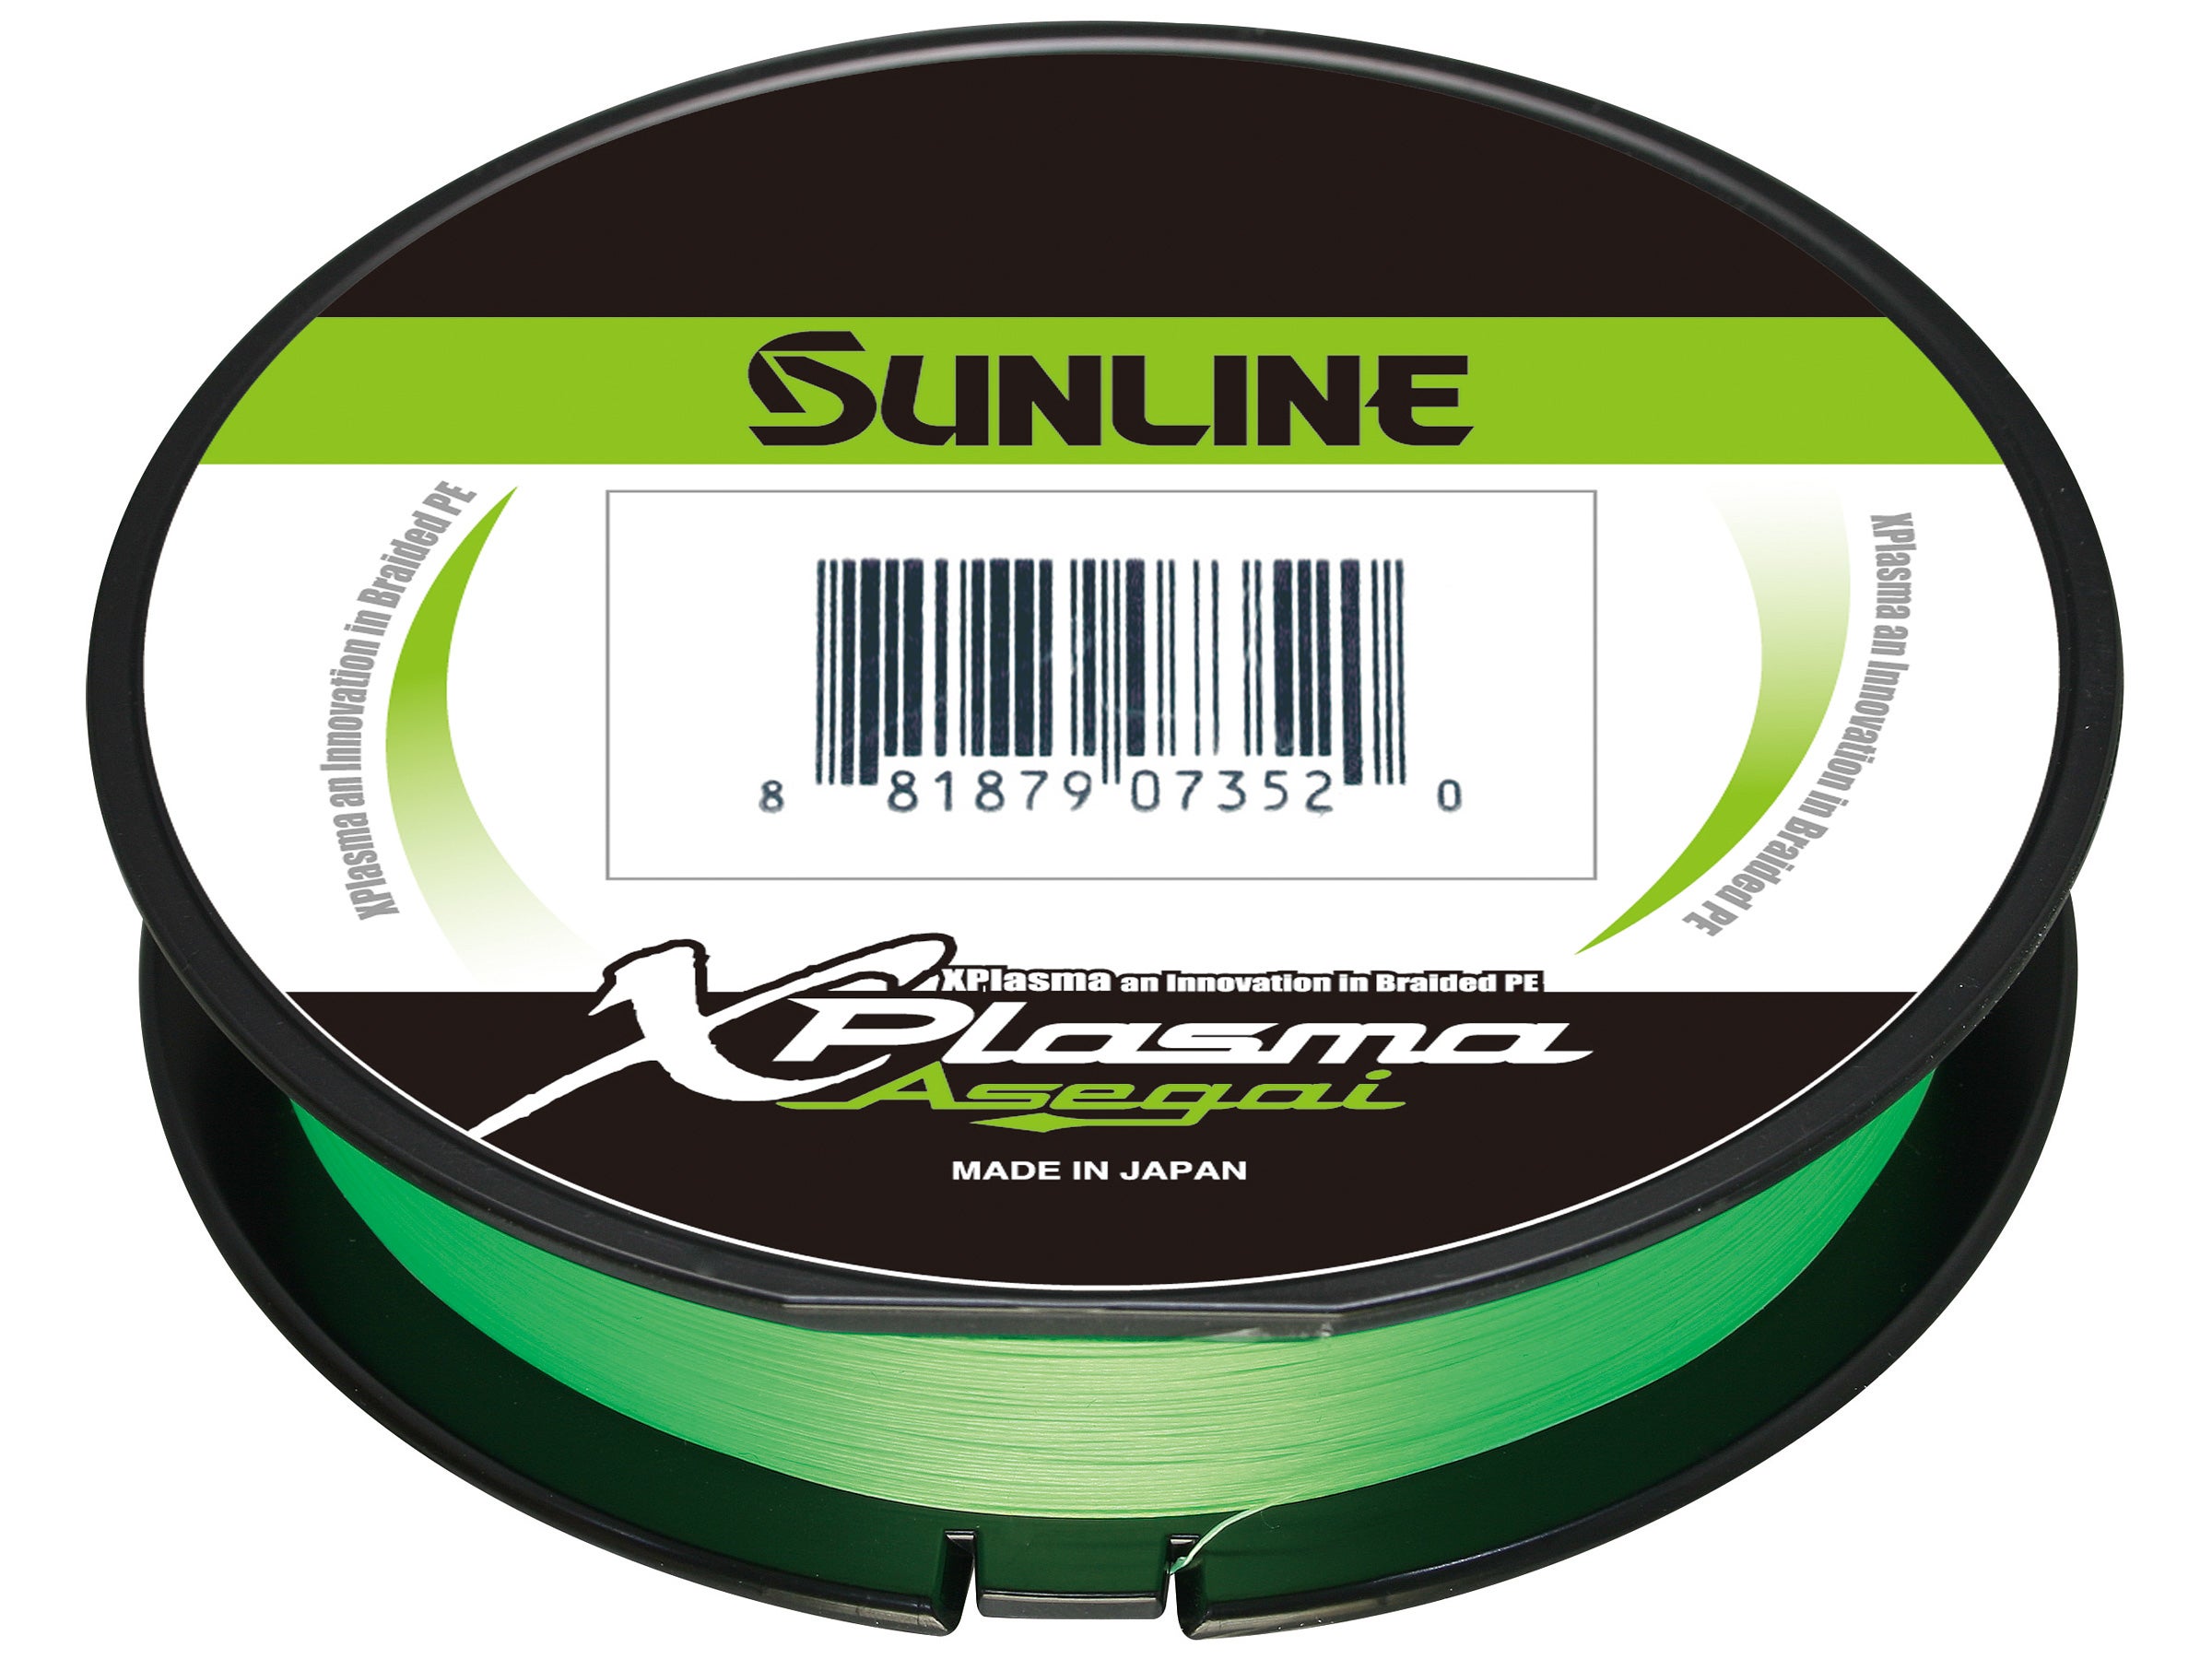 SUNLINE Xplasma Asegai 12lb Light Green 600yd 63043224 for sale online 